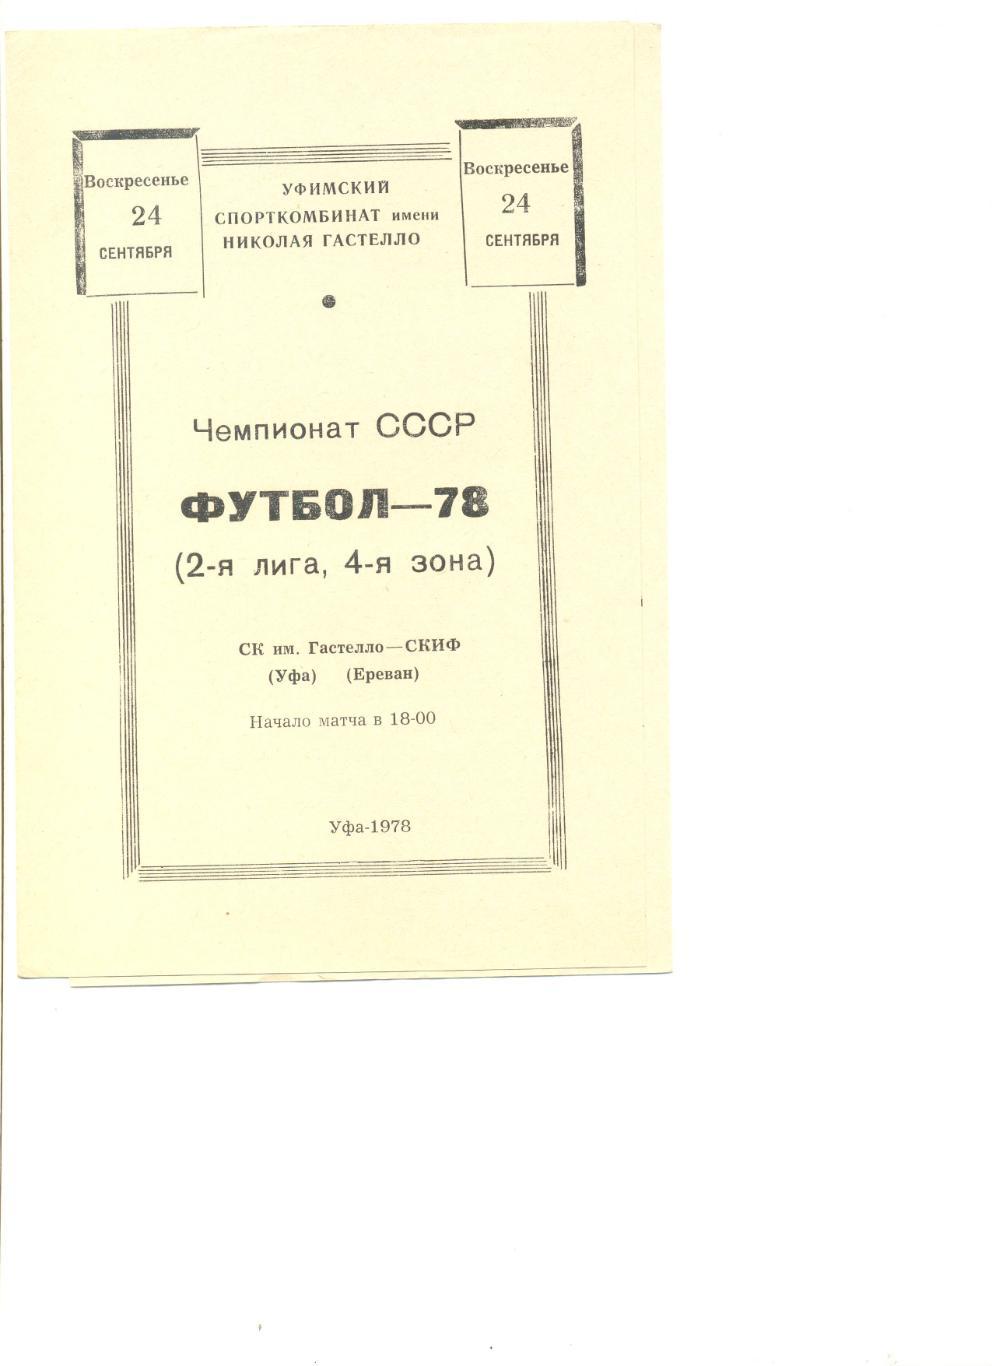 СК Гастелло Уфа - СКИФ Ереван 24.09.1978 г.